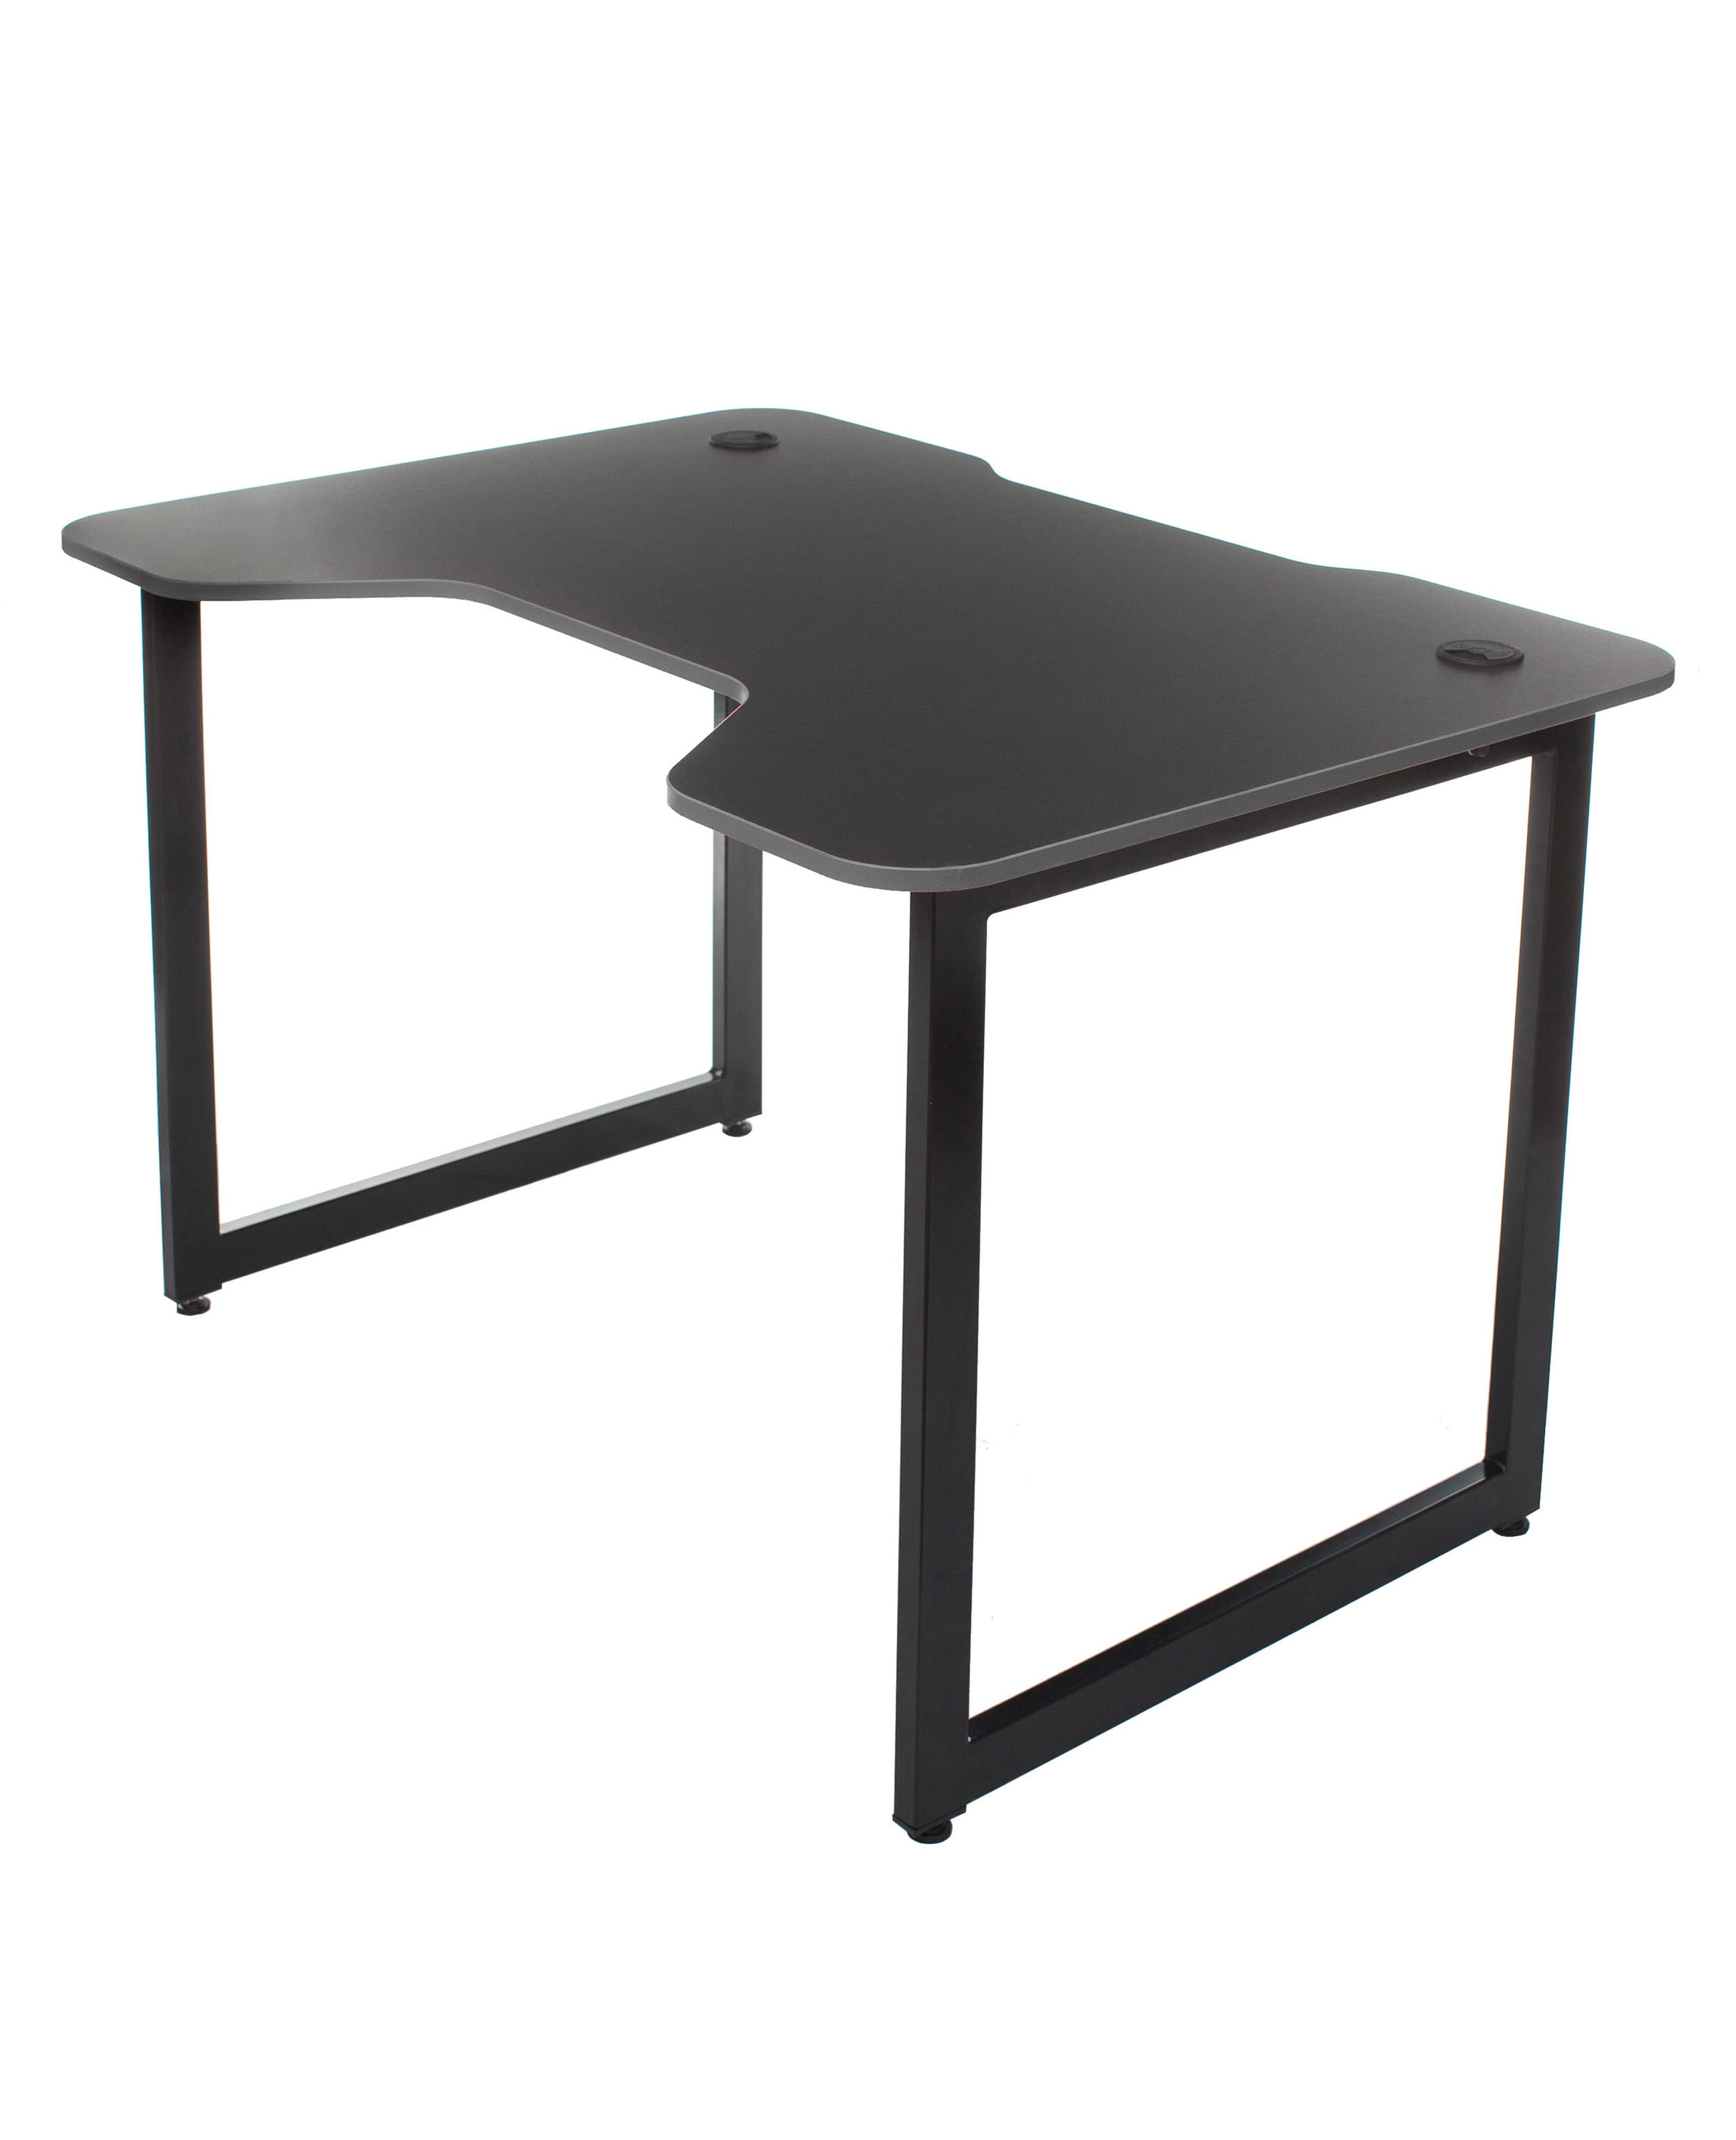 Стол игровой Knight Table L Black столешница ДСП черный каркас черный металл